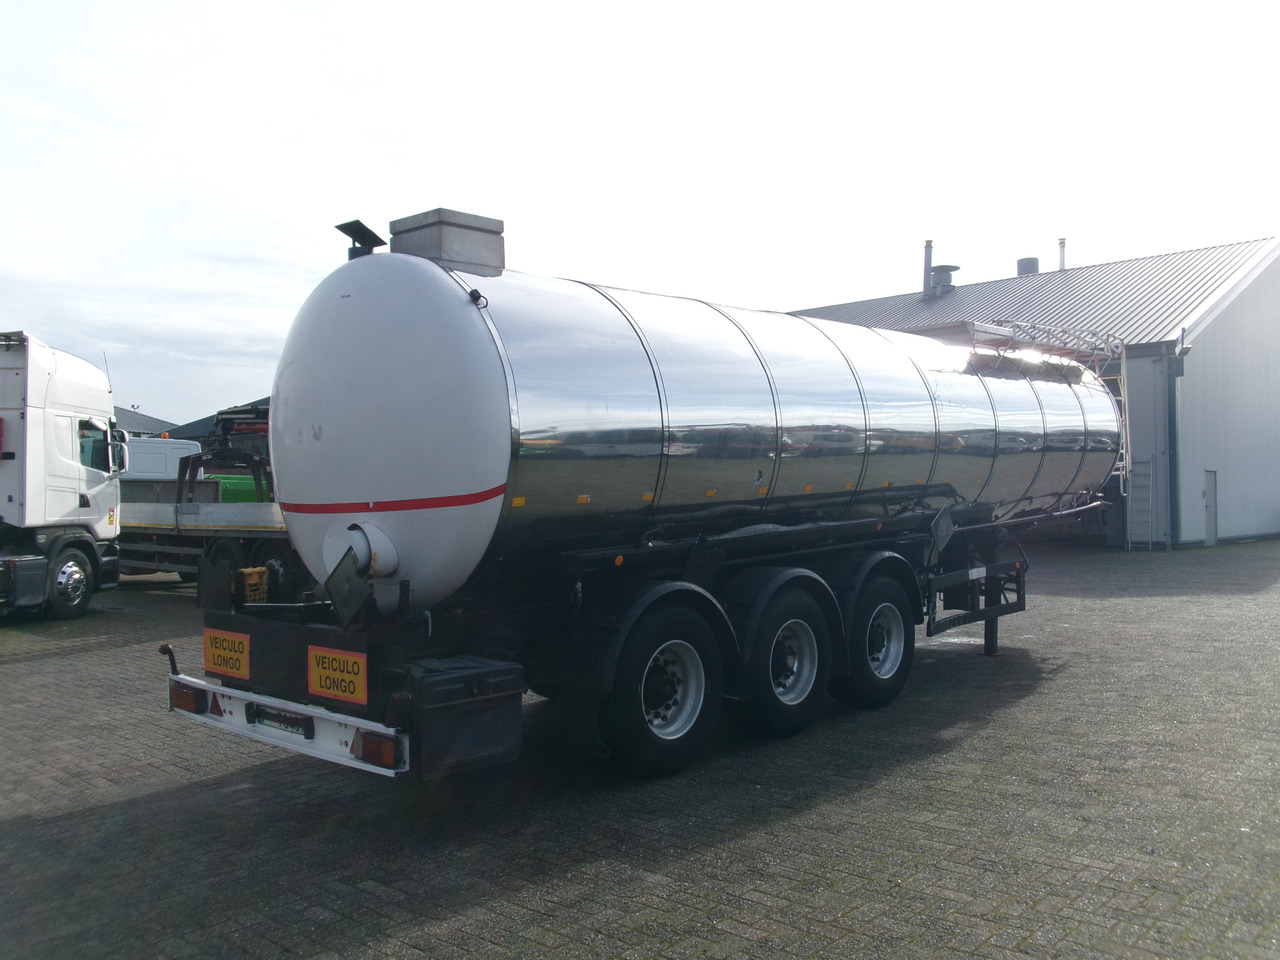 סמיטריילר מכל עבור הובלה של דלק Metalovouga Bitumen / heavy oil tank inox 29 m3 / 1 comp: תמונה 4